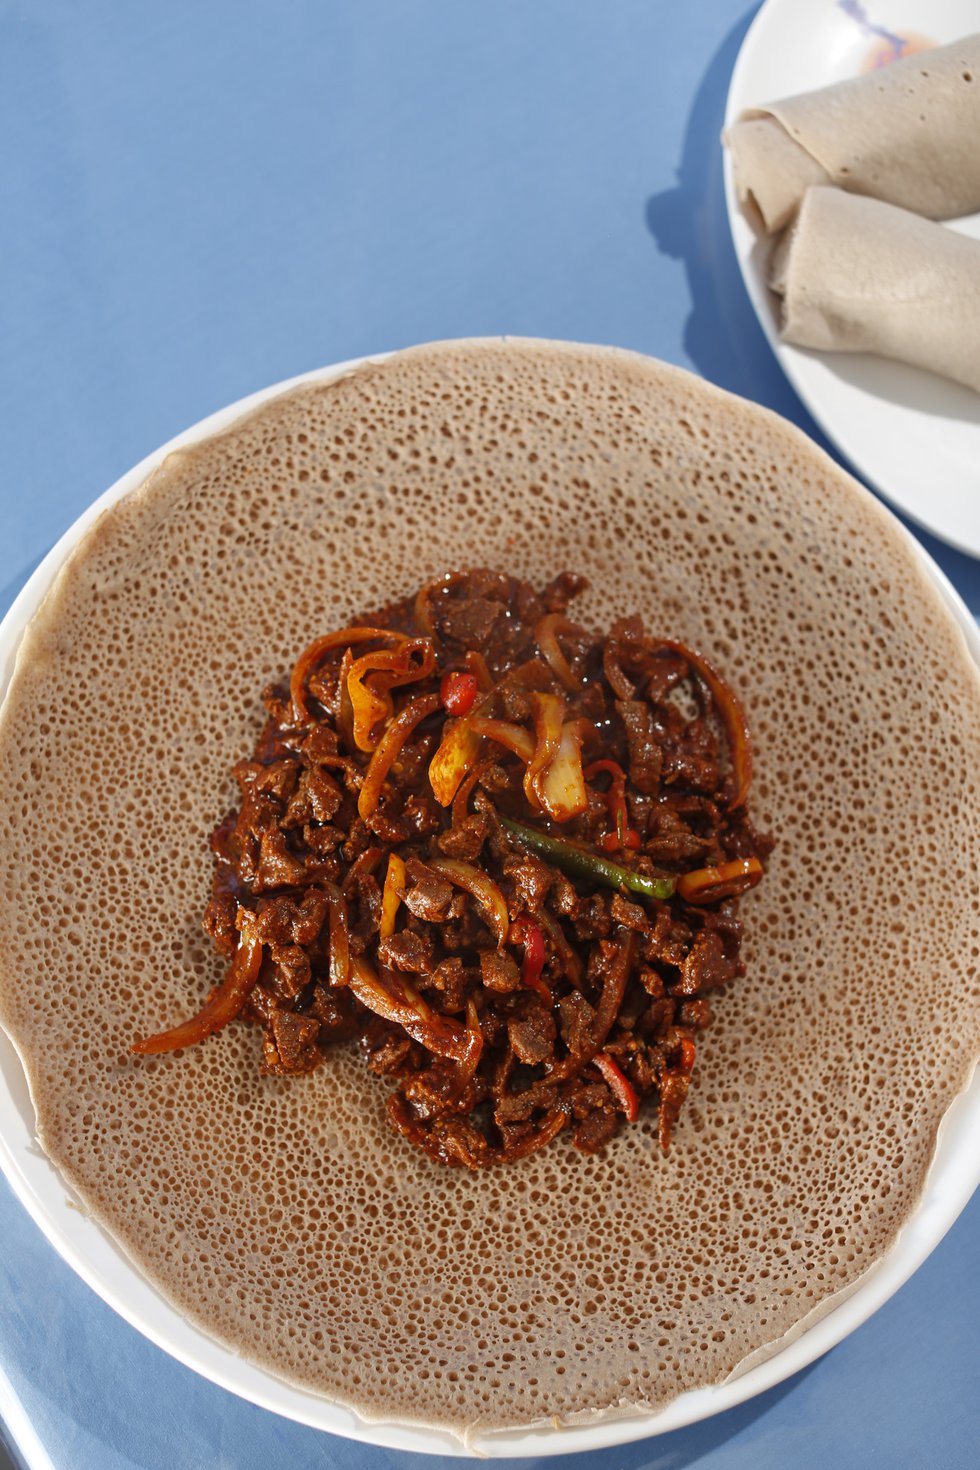 Derae Restaurant: Ethiopian fermented flatbread, called injera, cradles tibs, a spicy stew. 